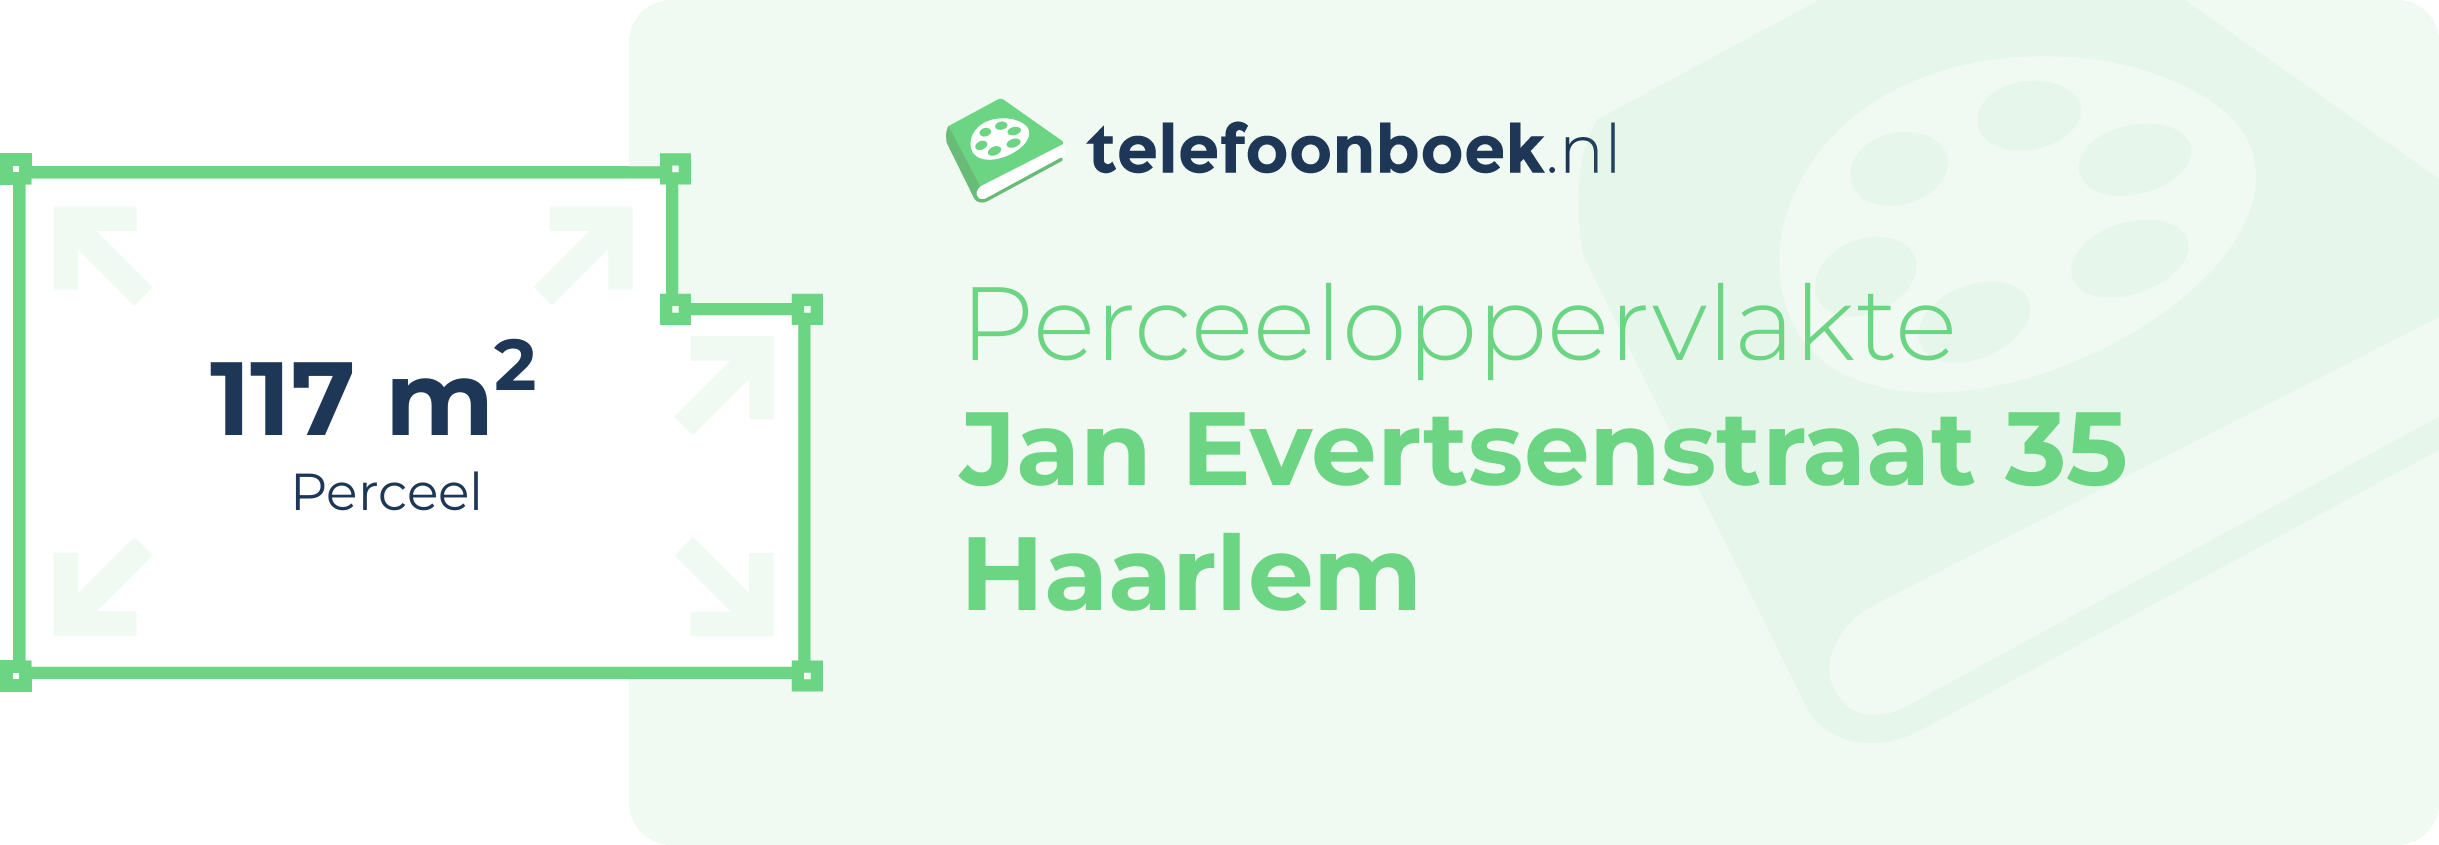 Perceeloppervlakte Jan Evertsenstraat 35 Haarlem